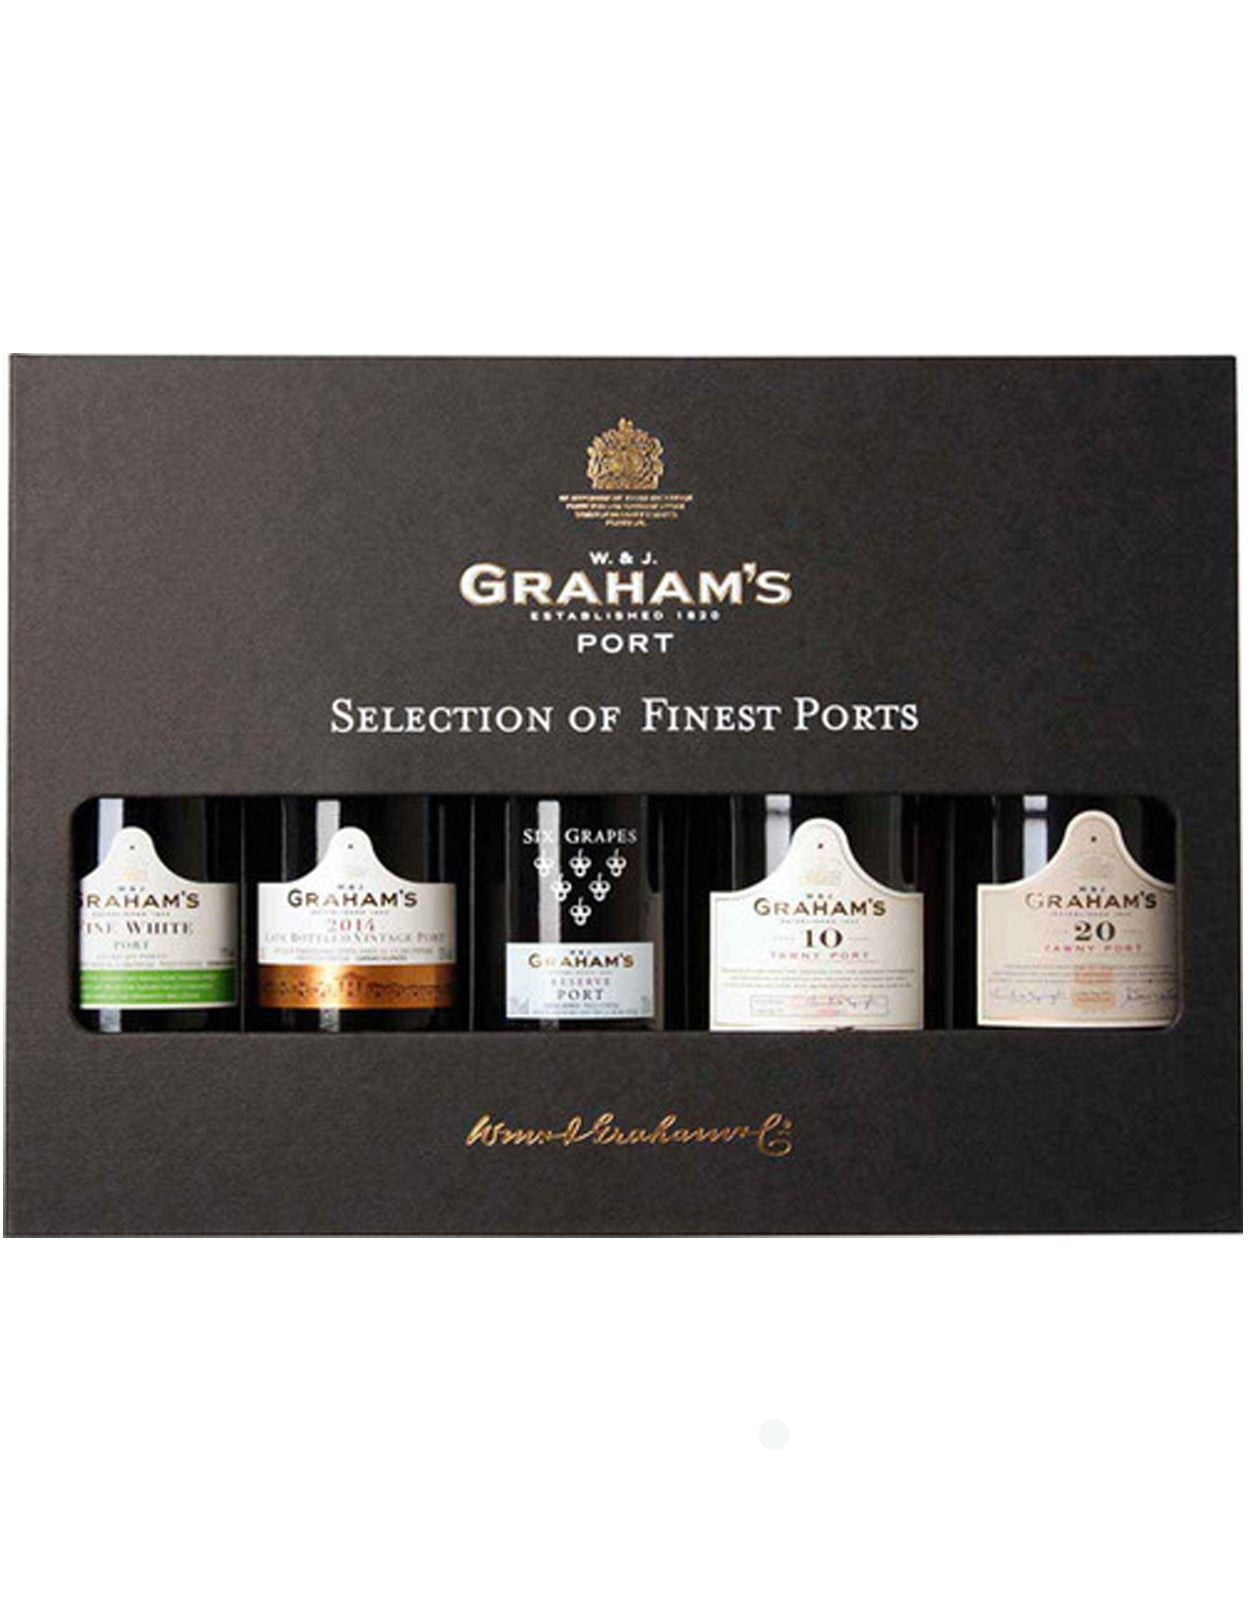 Graham's Port Gift Pack - 5 x 200 ml